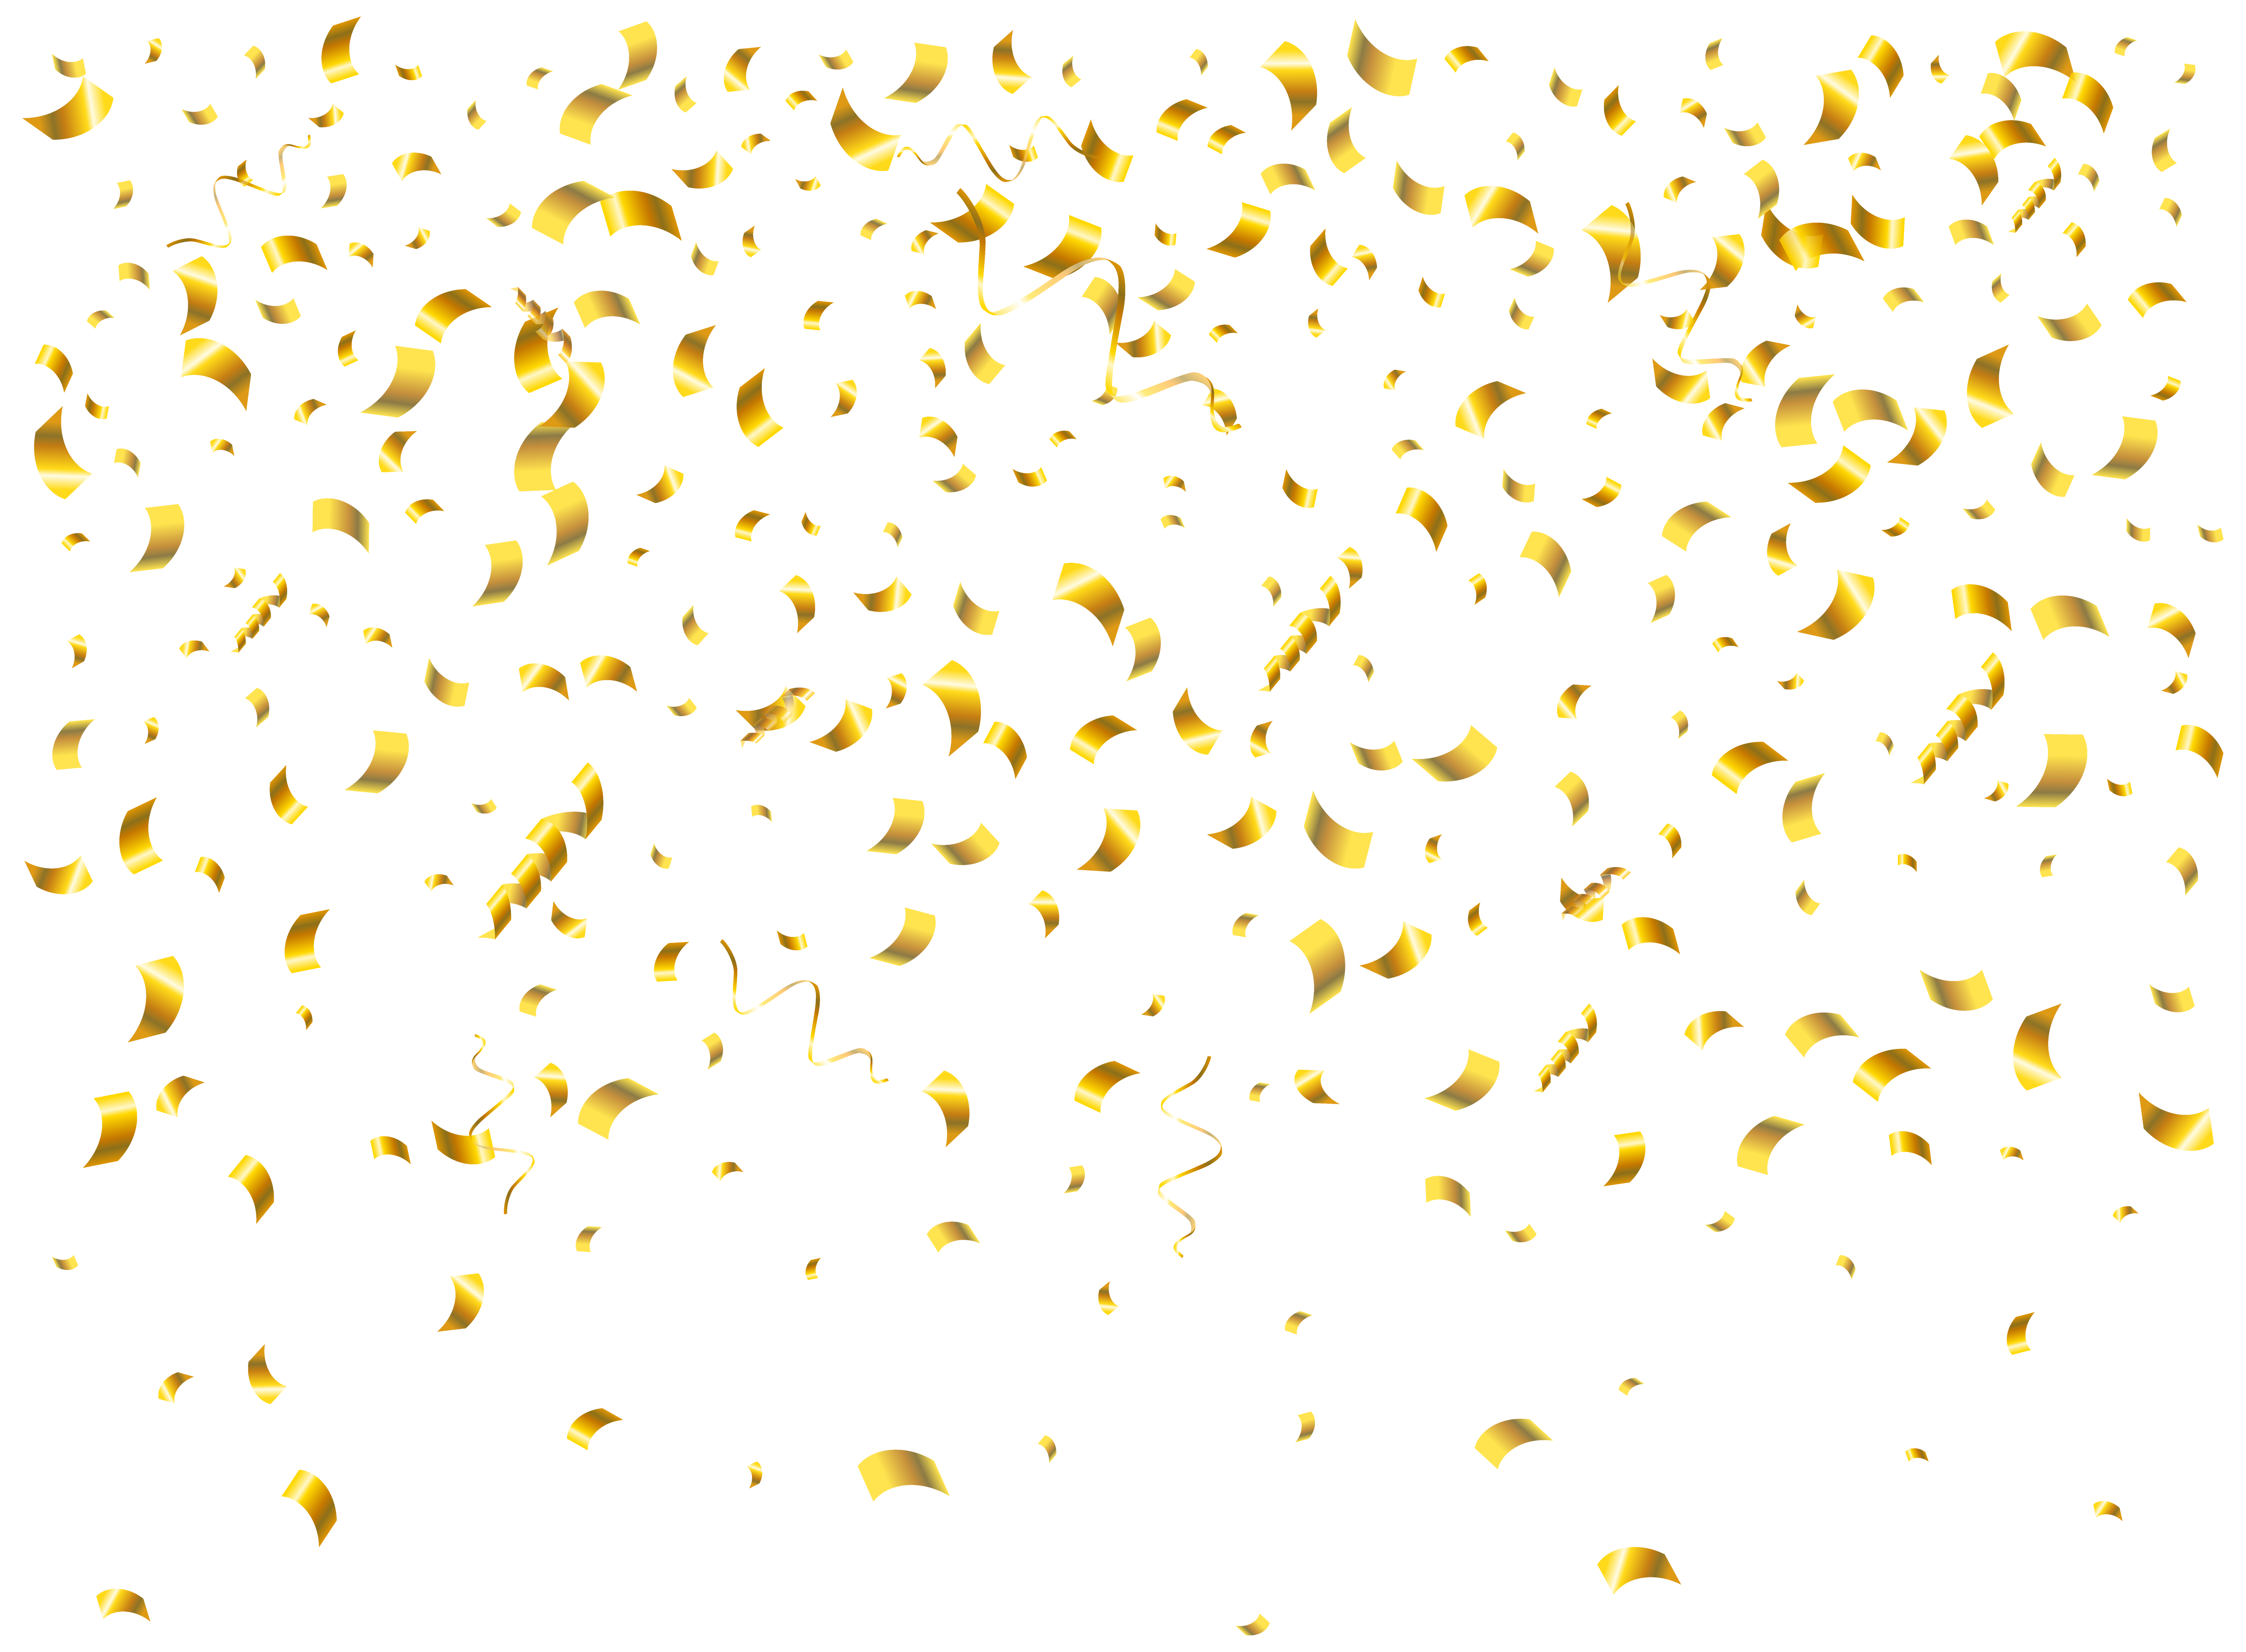 gold confetti clip art